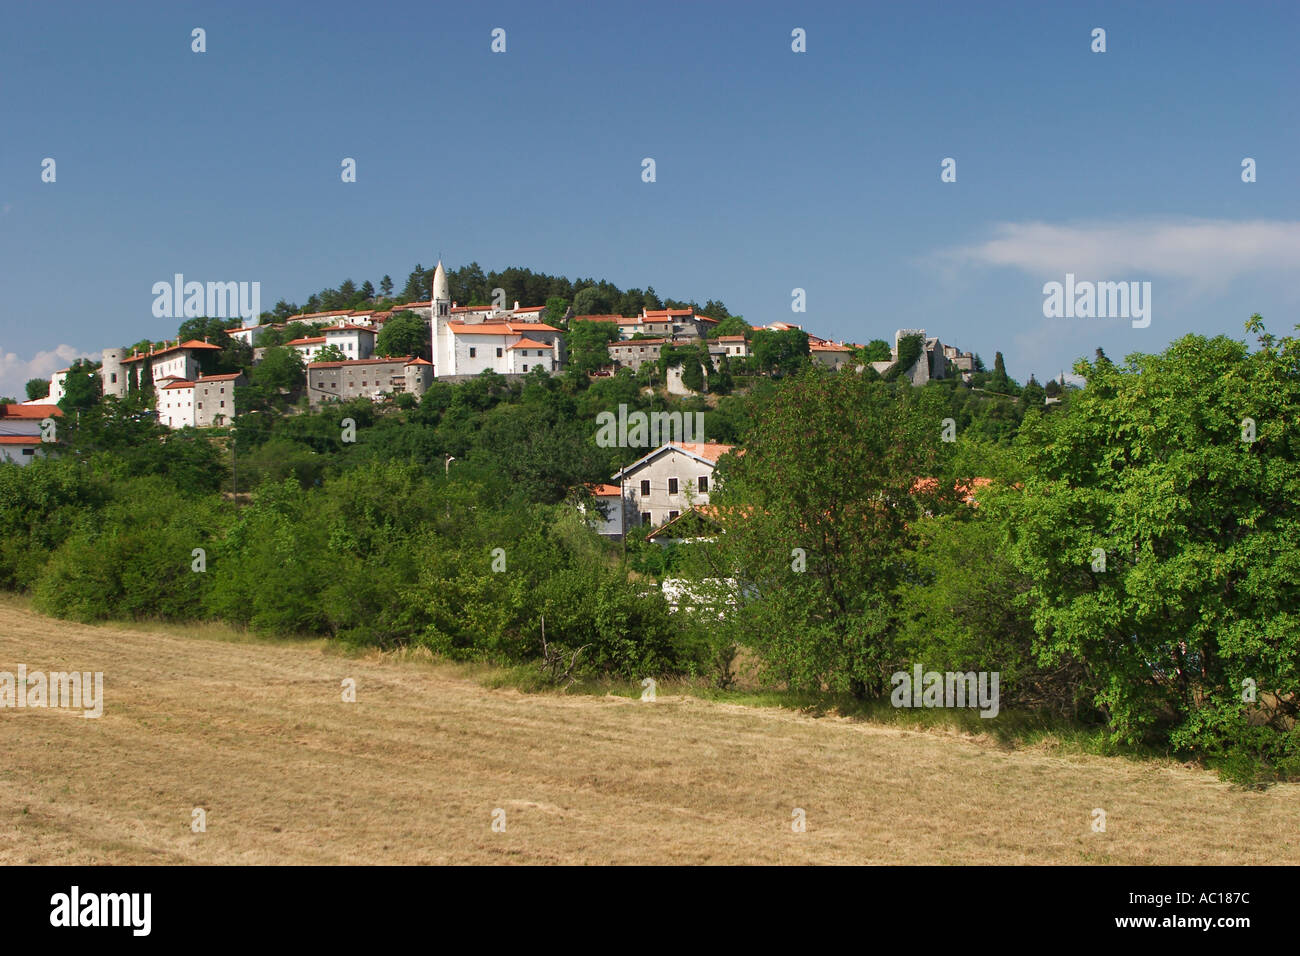 La città medievale di Stanjel nella Valle del Vipava Slovenia Foto Stock